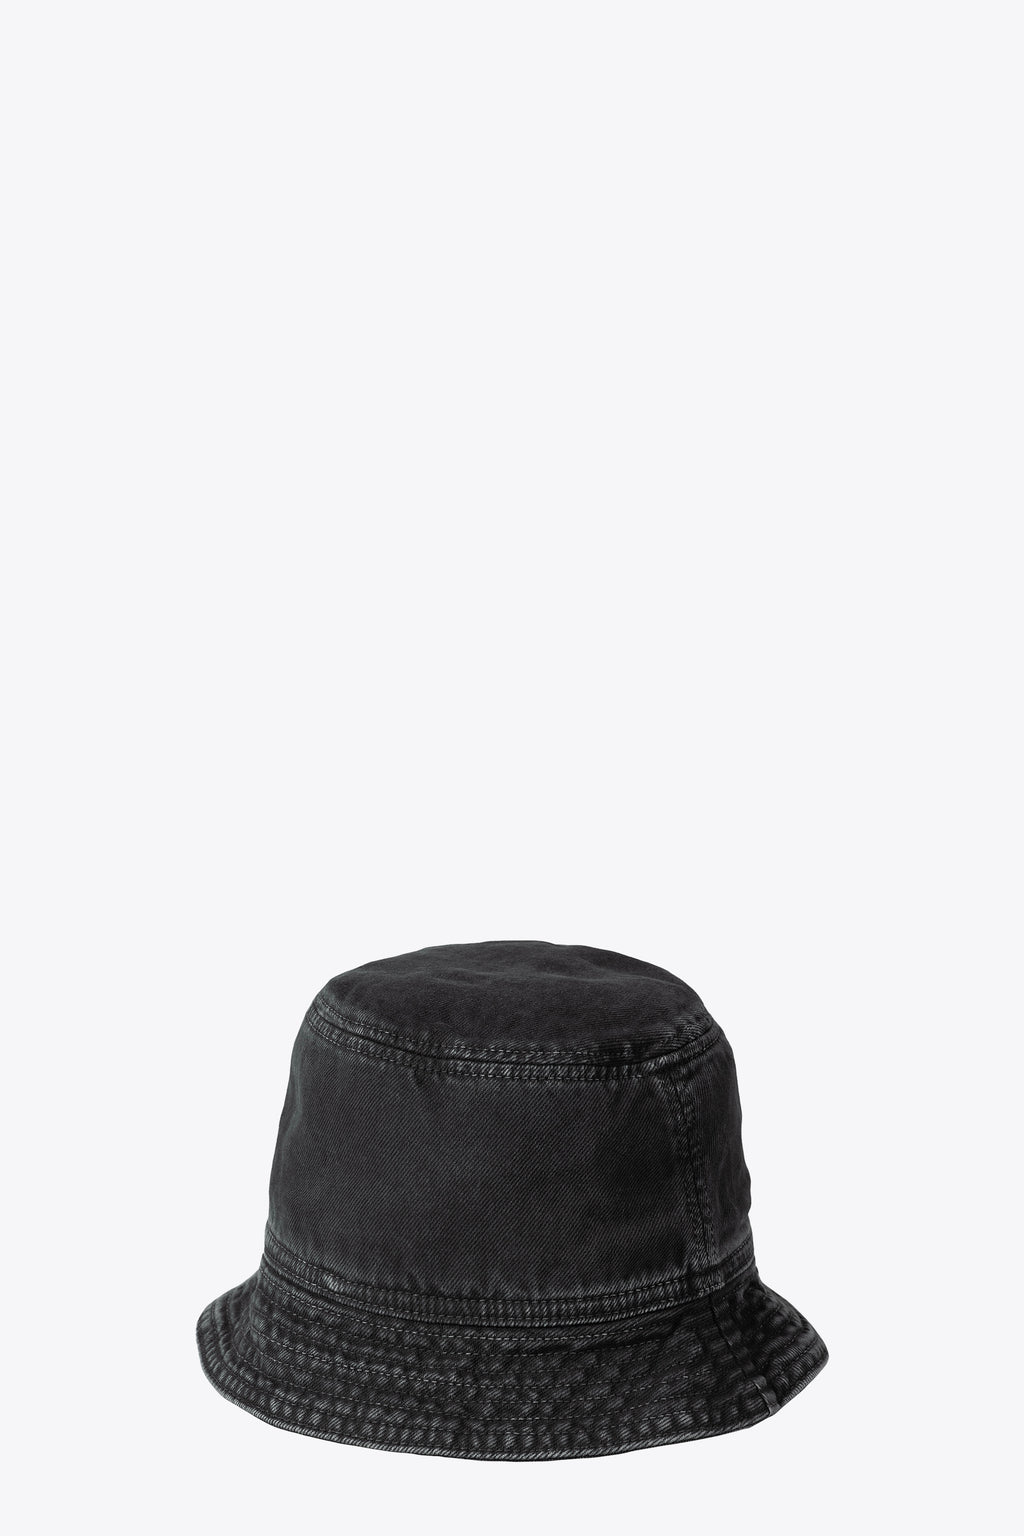 alt-image__Black-stone-washed-denim-bucket-hat---Garrison-Bucket-Hat